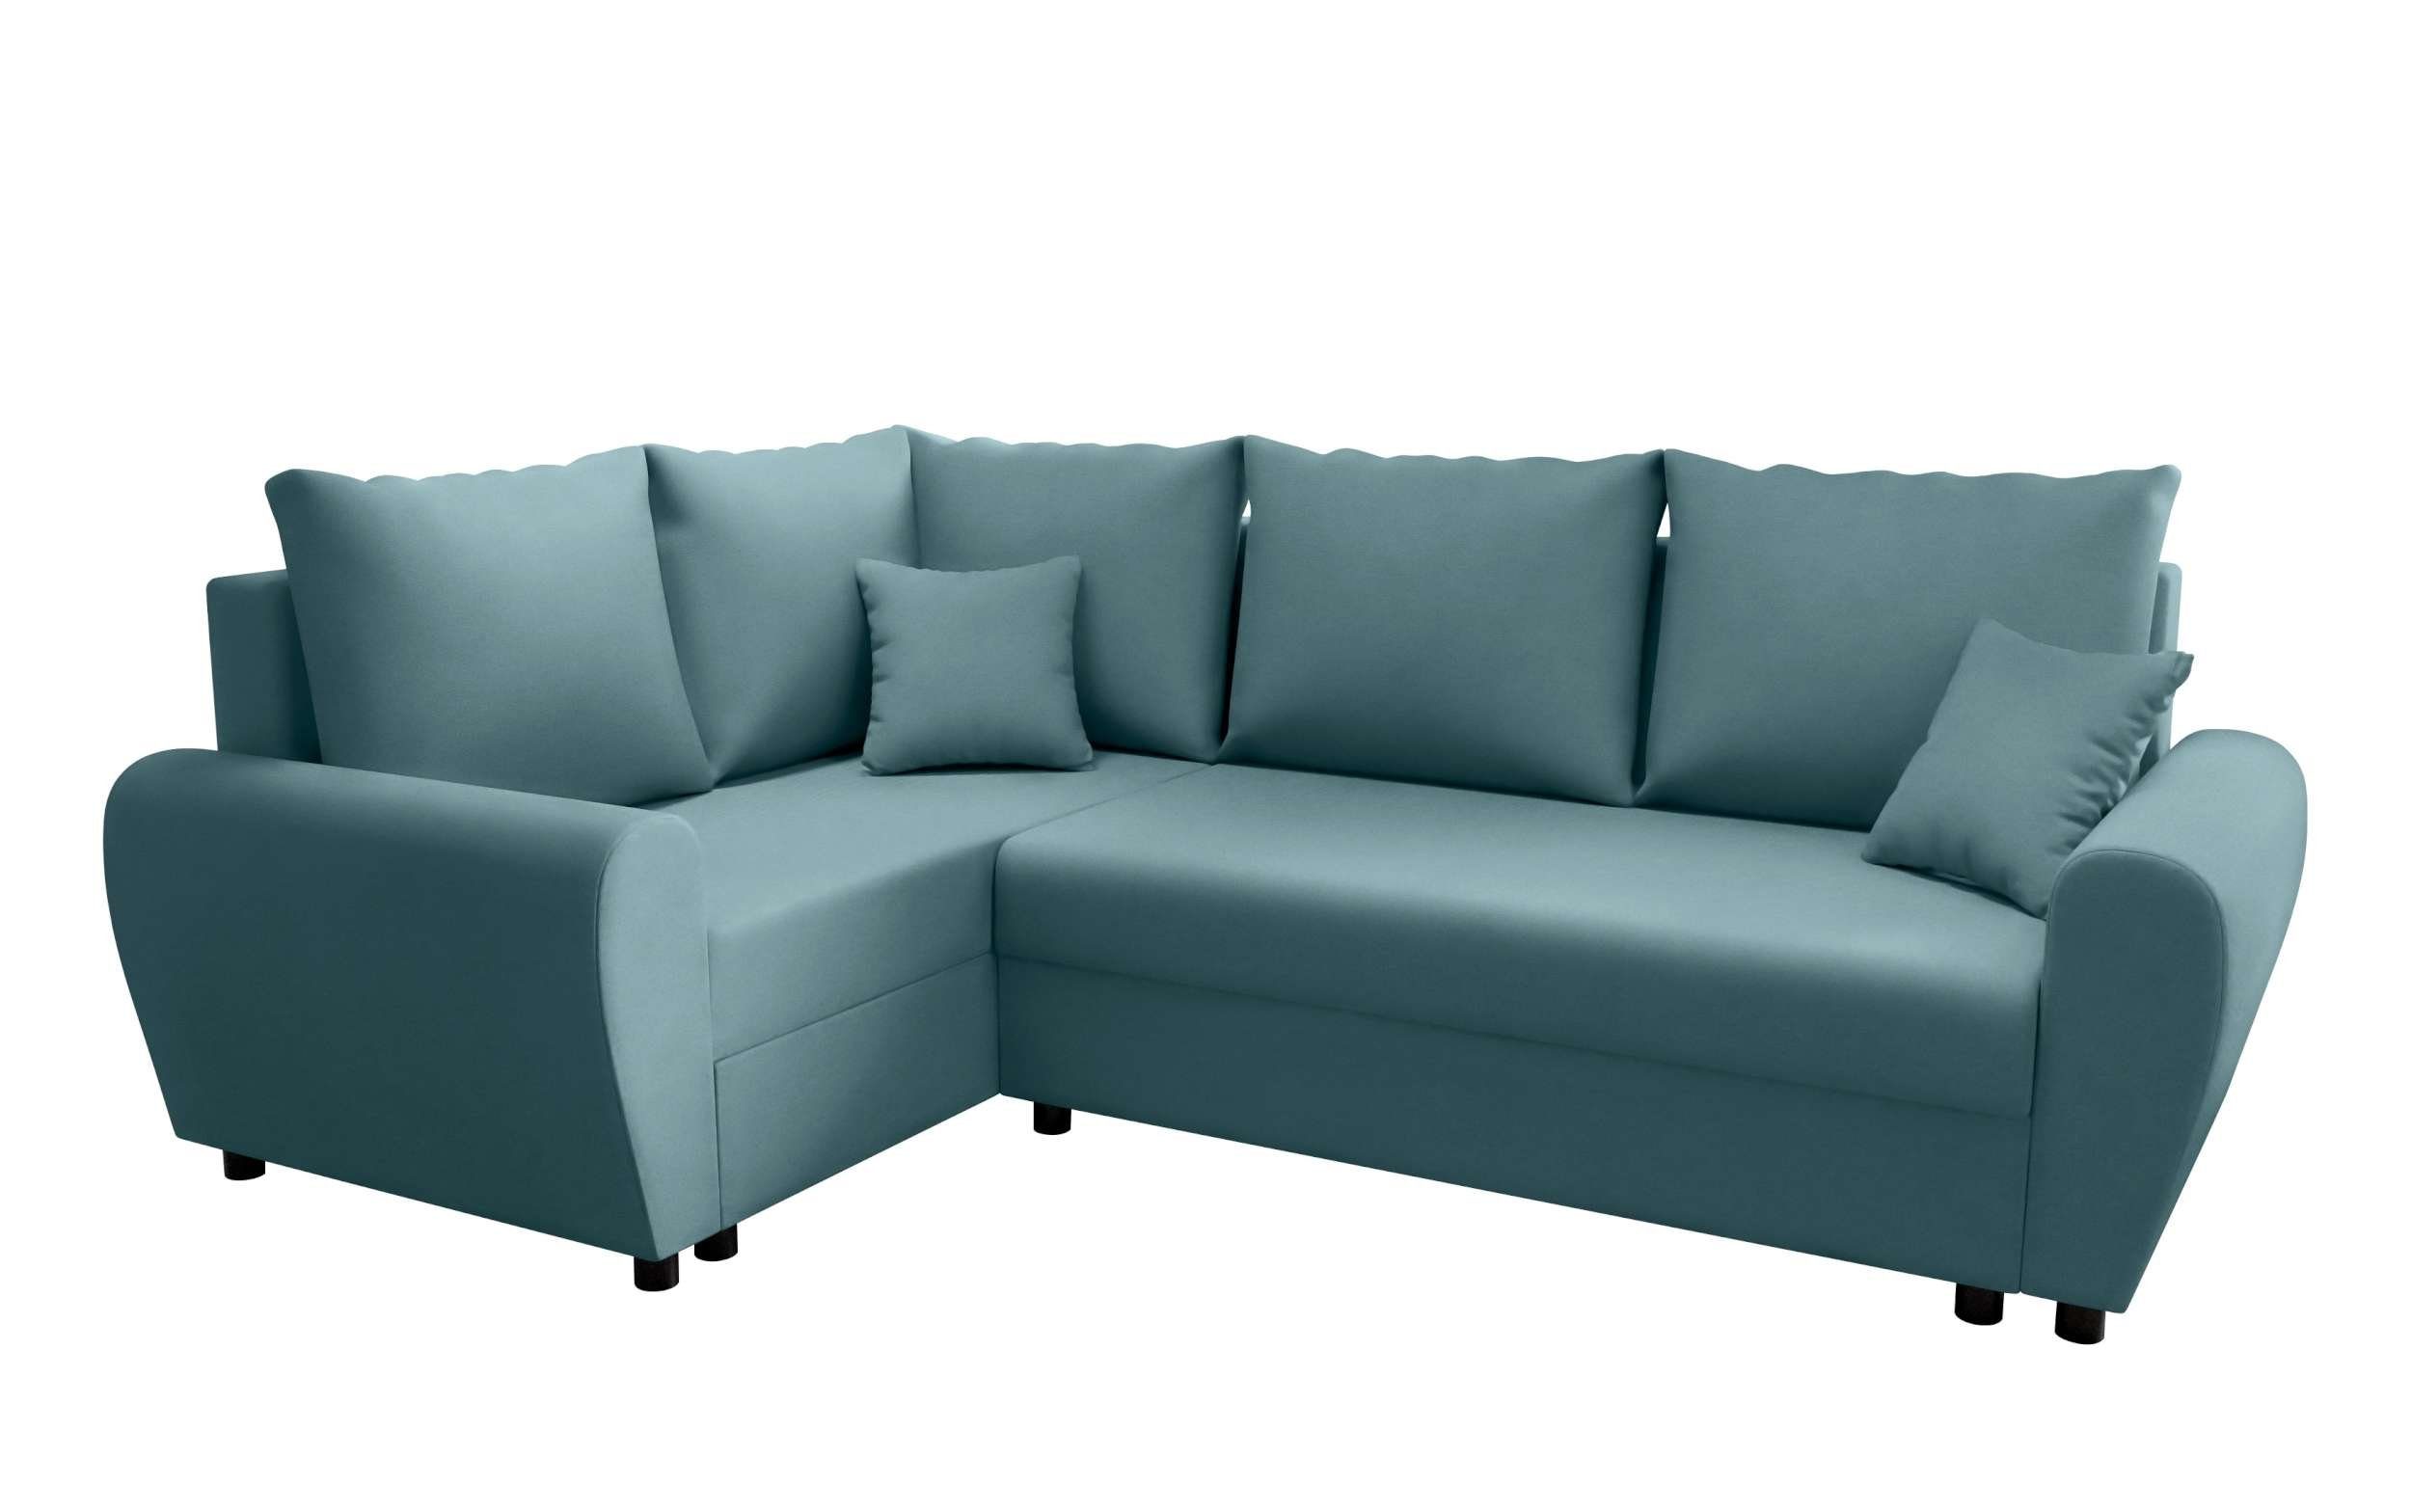 Stylefy Valence, Bettfunktion, Design mit Eckcouch, Bettkasten, Ecksofa mit Modern Sitzkomfort, Sofa, L-Form,